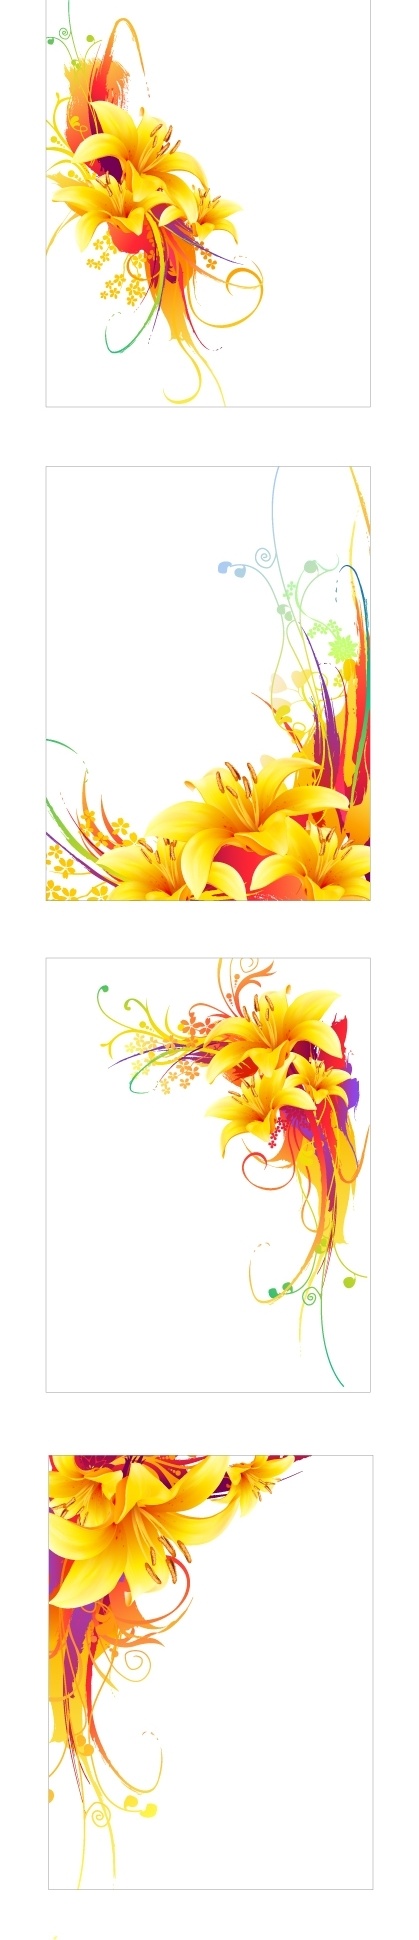 植物 花卉 装饰 矢量 背景 图 百合花 背景模版 花卉背景 花卉边框 金色边框 精美花卉 模板 设计稿 素材元素 植物花卉 装饰花卉 黄色花卉 源文件 矢量图